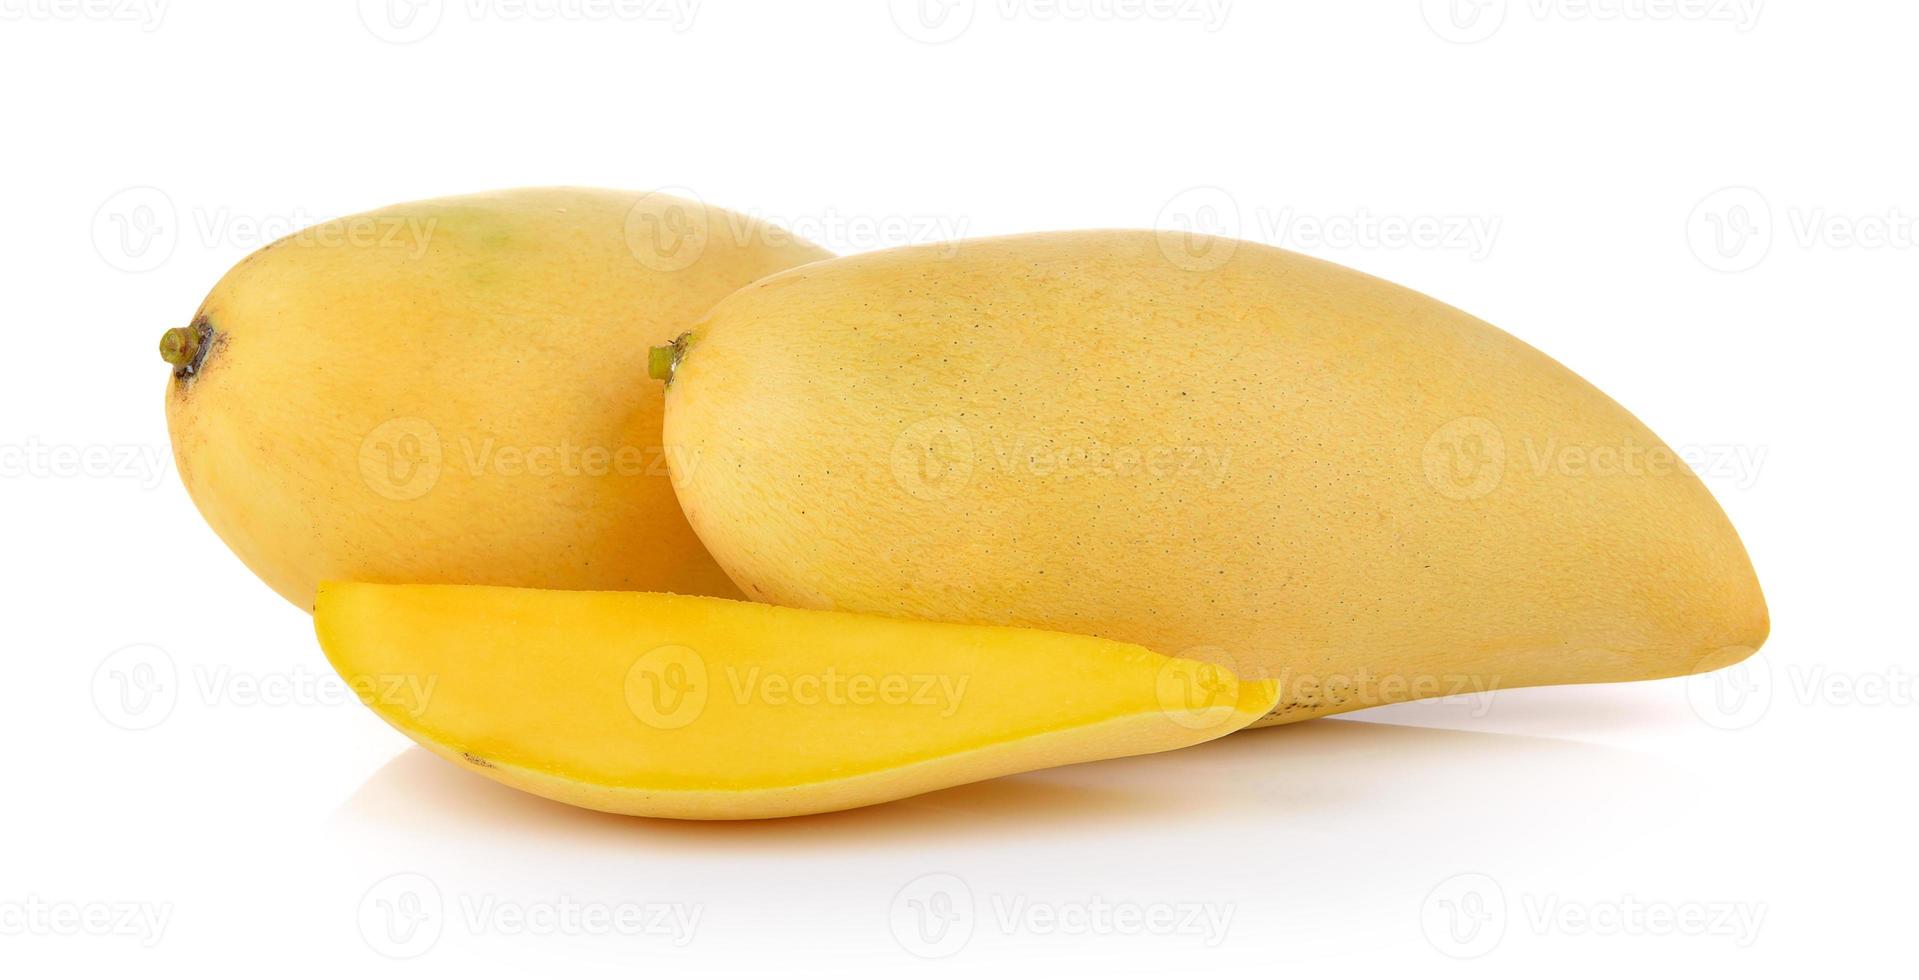 mango op witte achtergrond foto